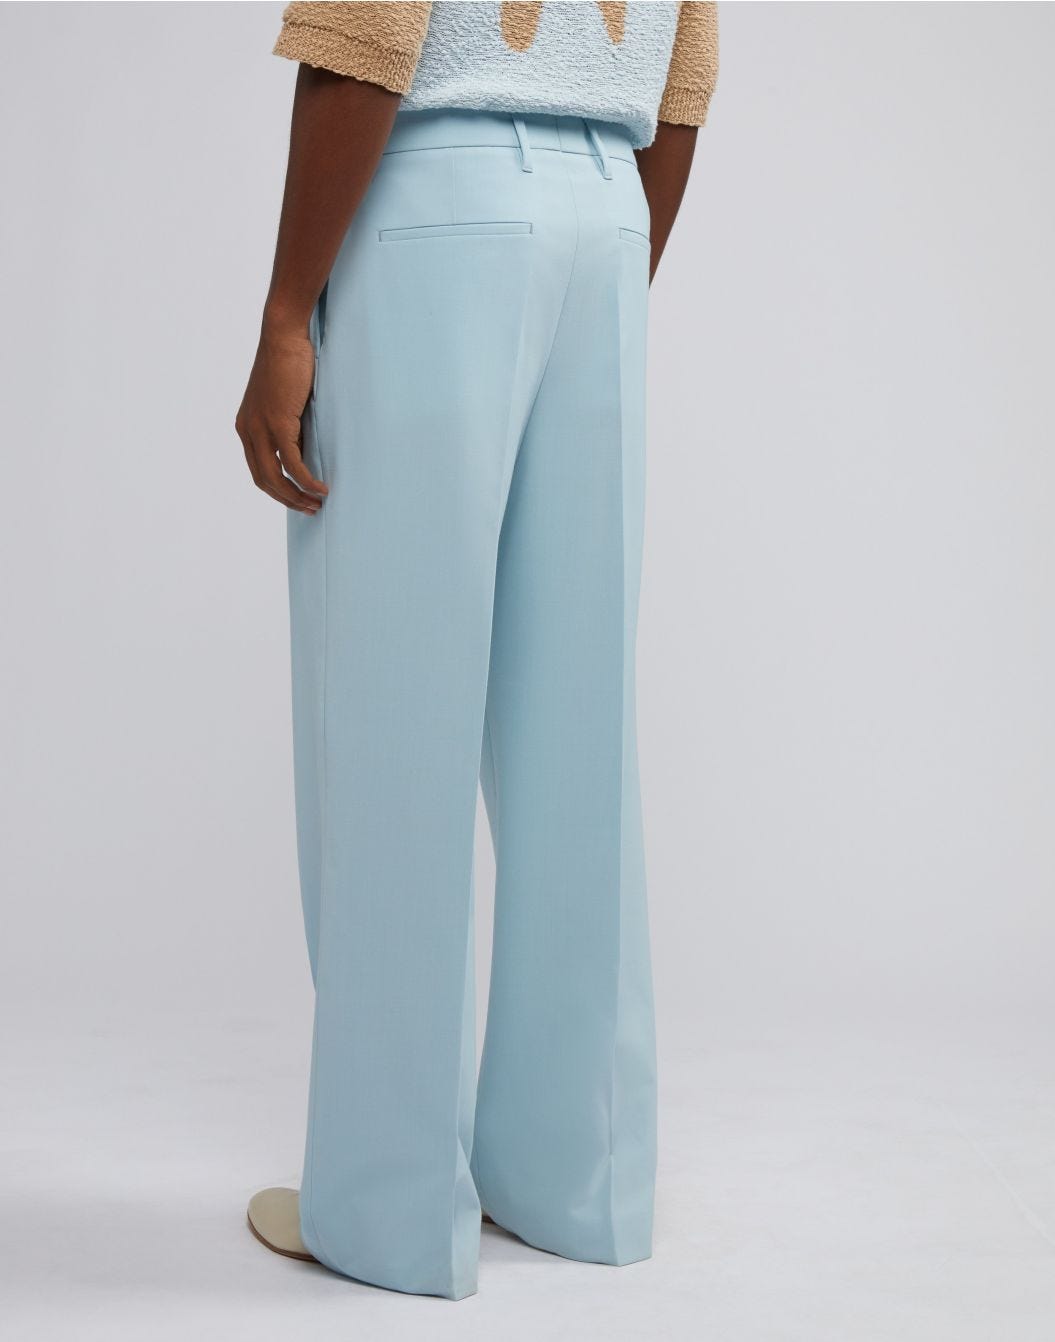 Pantalon confortable bleu clair